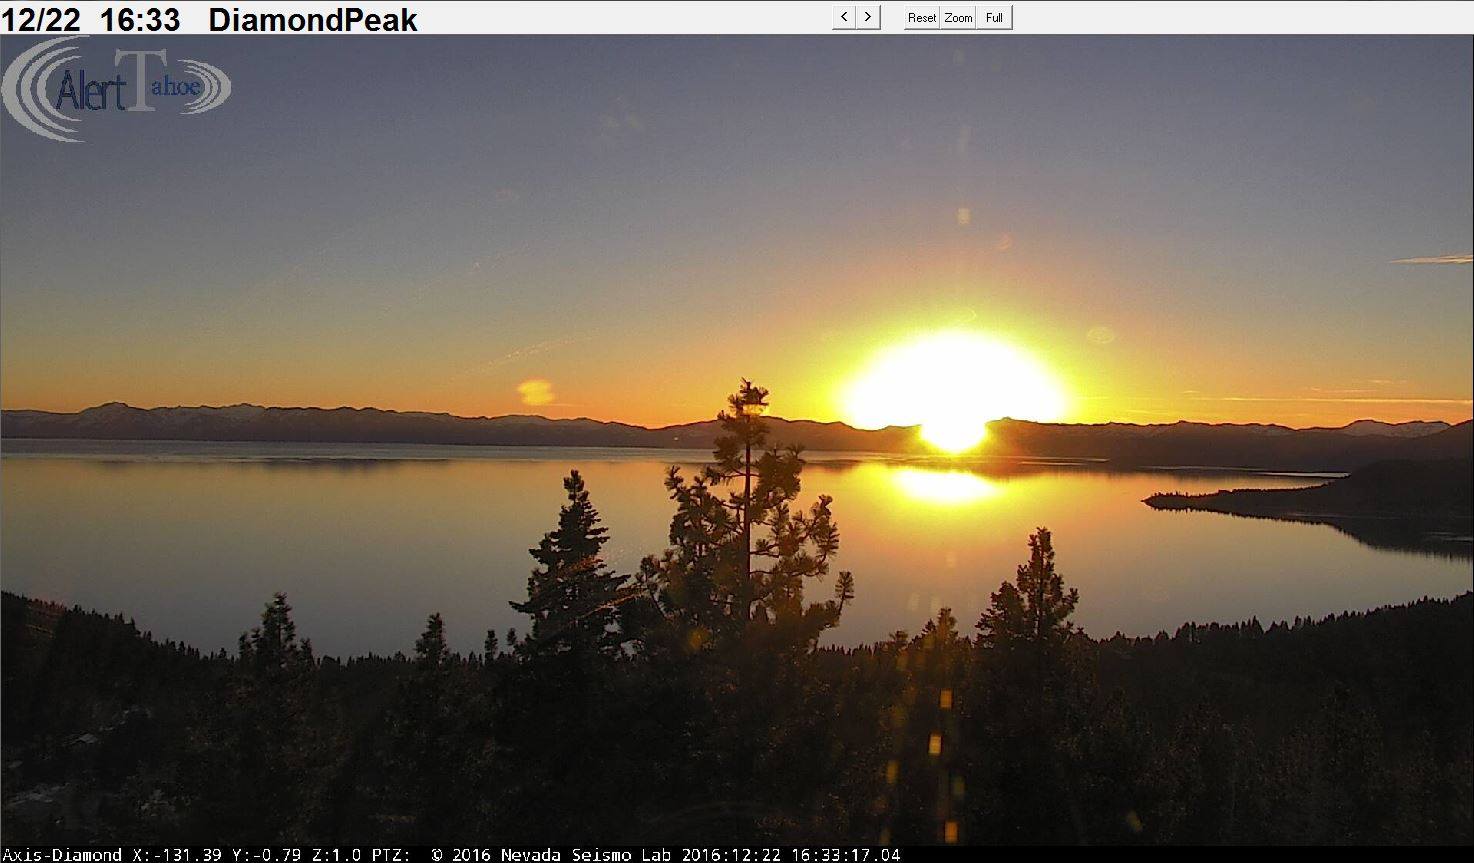 Sunset on Lake Tahoe yesterday.